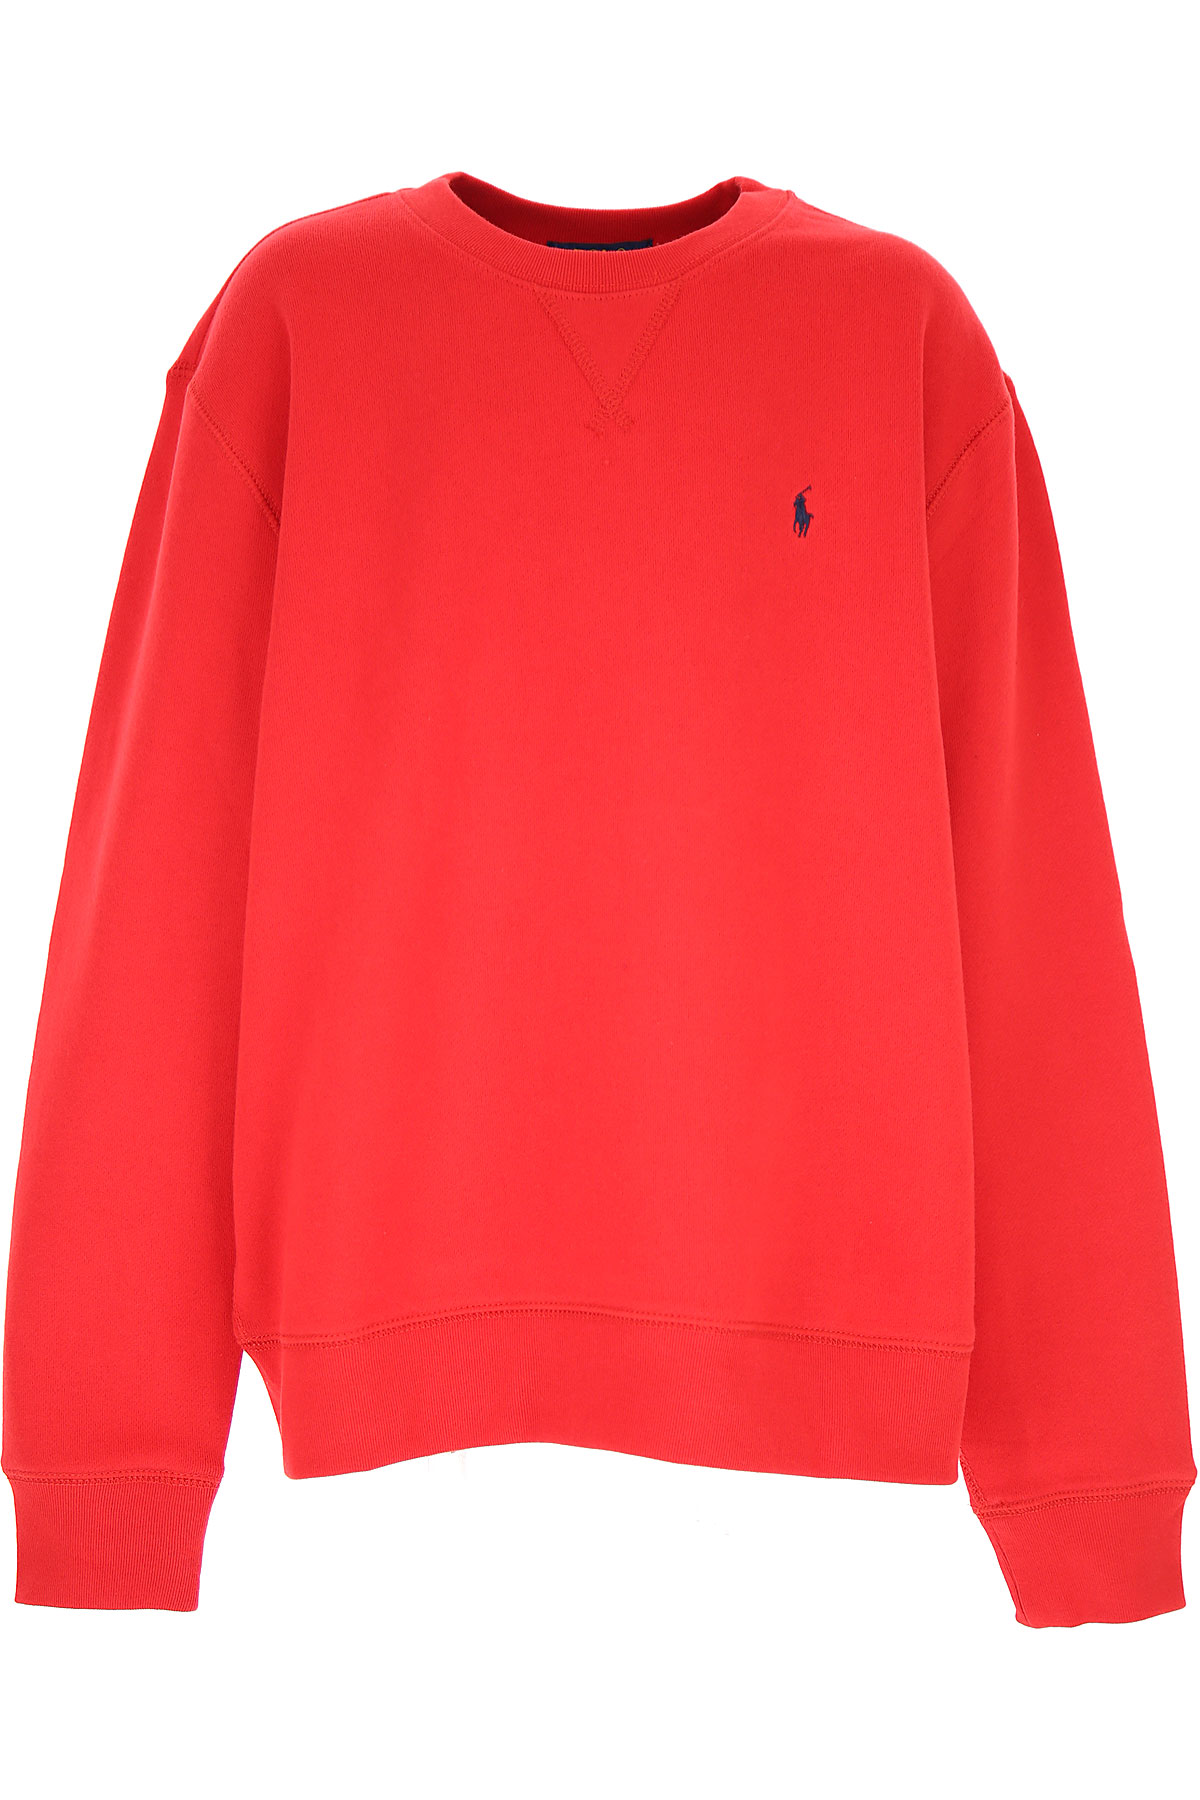 Ralph Lauren Kinder Sweatshirt & Kapuzenpullover für Jungen Günstig im Sale, Rot, Baumwolle, 2017, M S XL